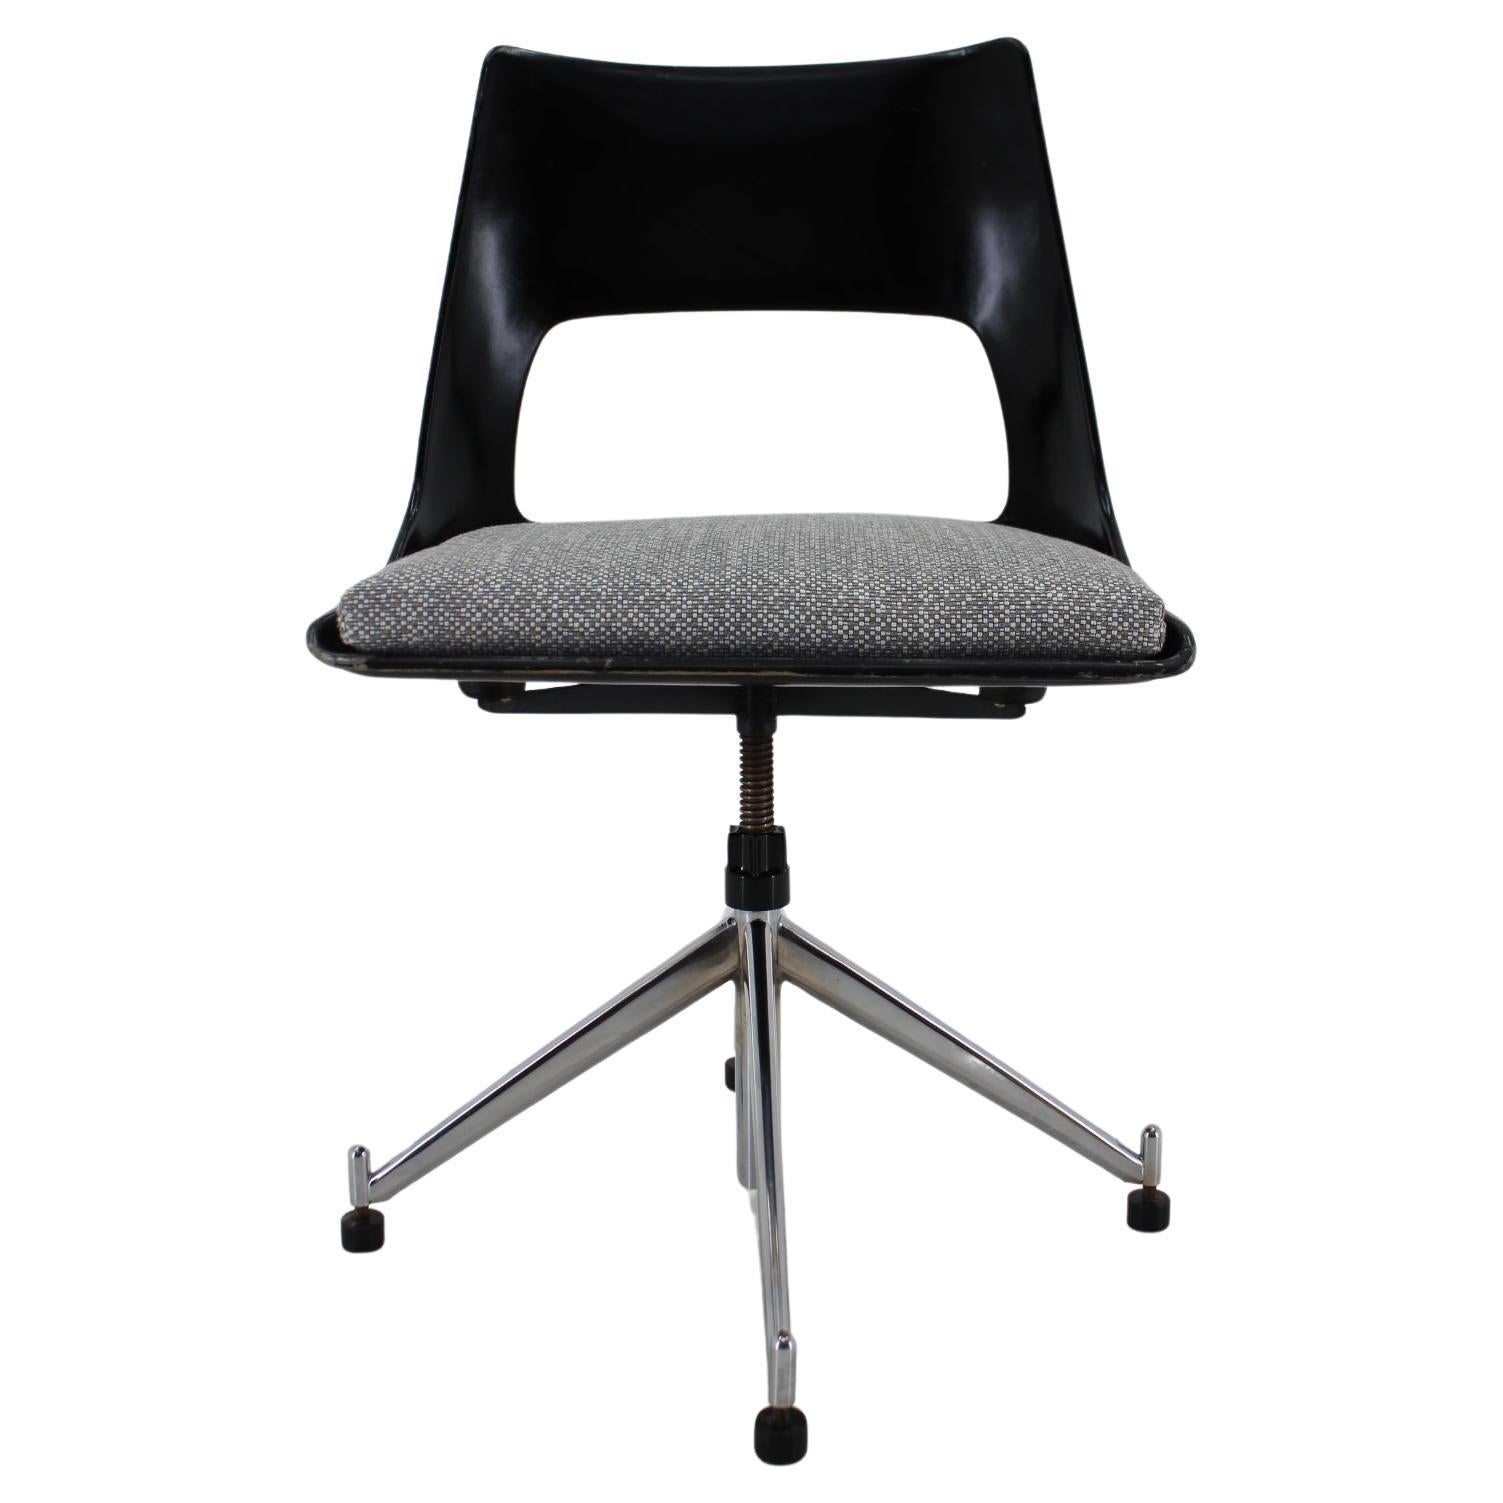 1960s Kay Korbing Swivel Chair Model KK-1A for Fibrex Denmark